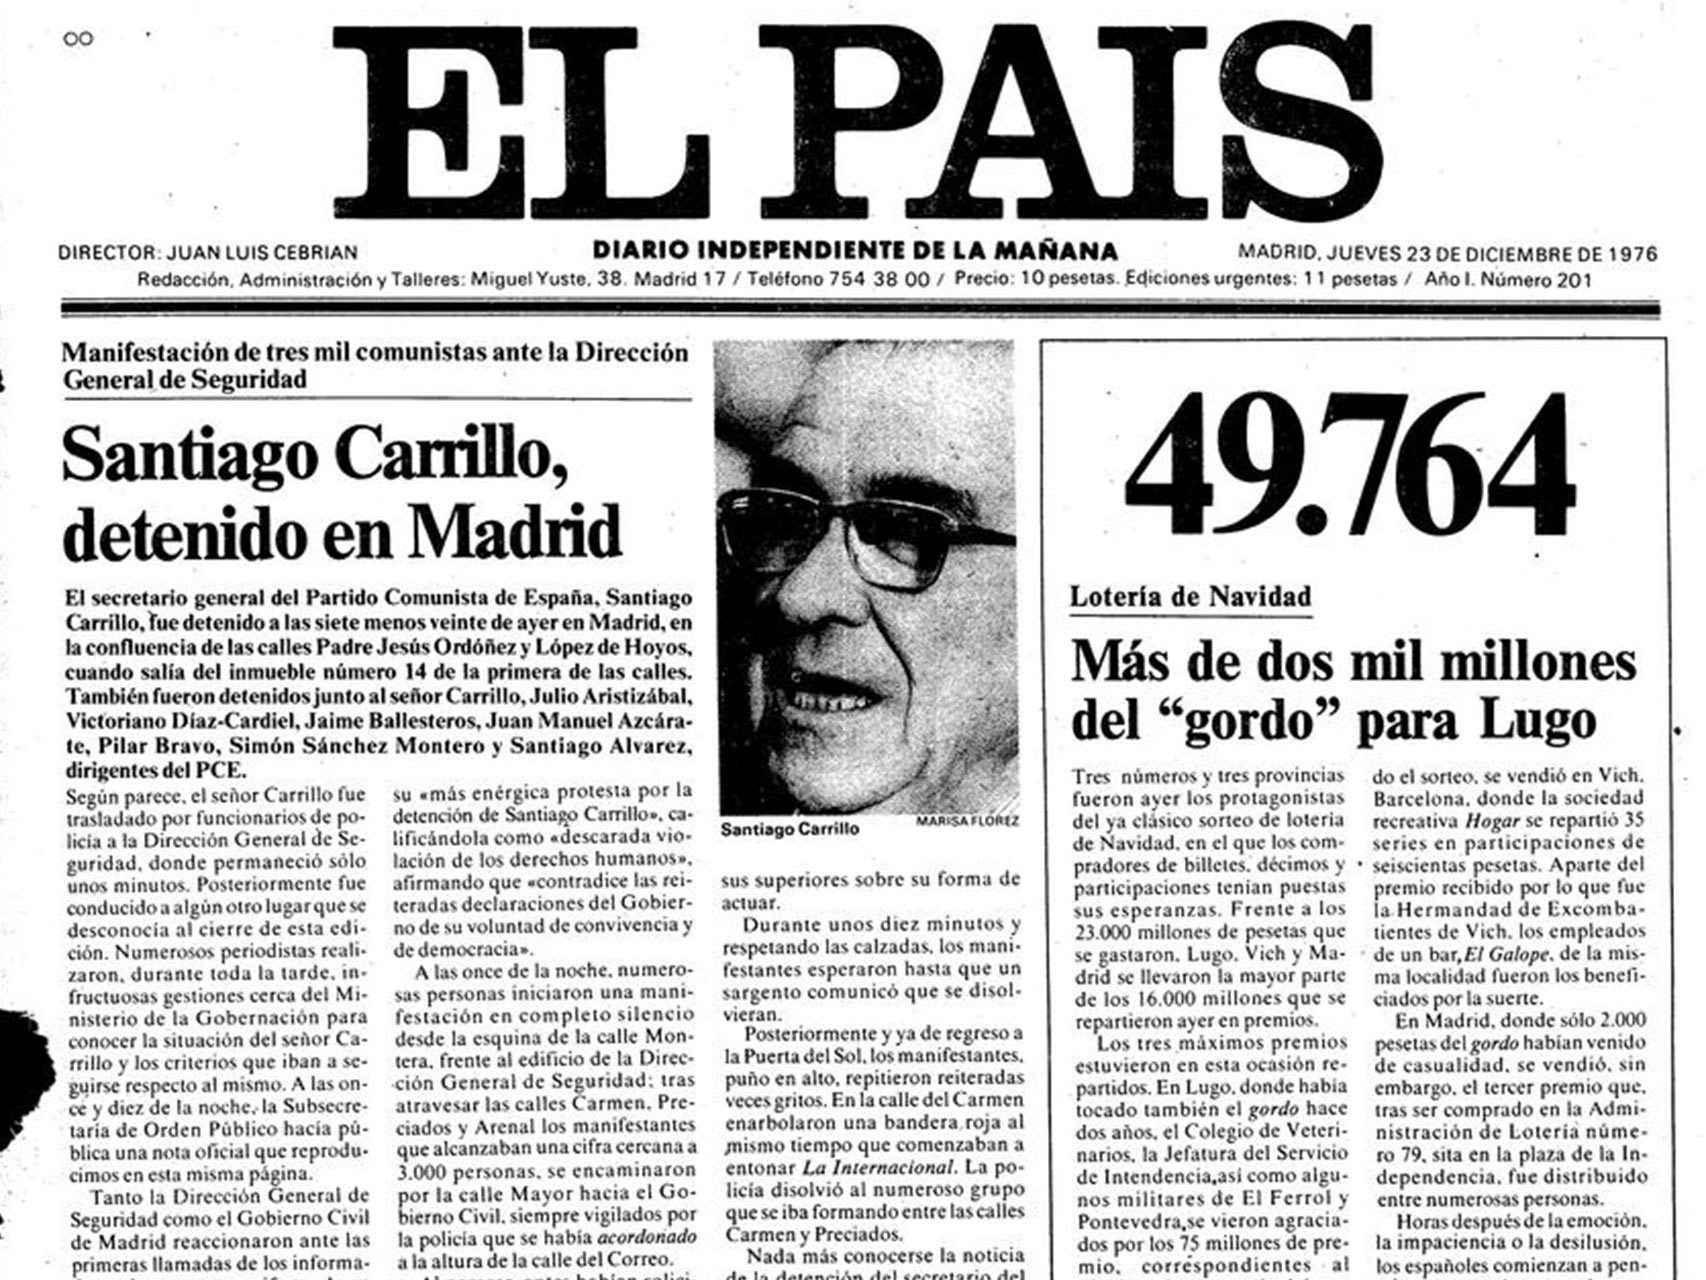 Portada de El País, dando cuenta de la detención de Carrillo.